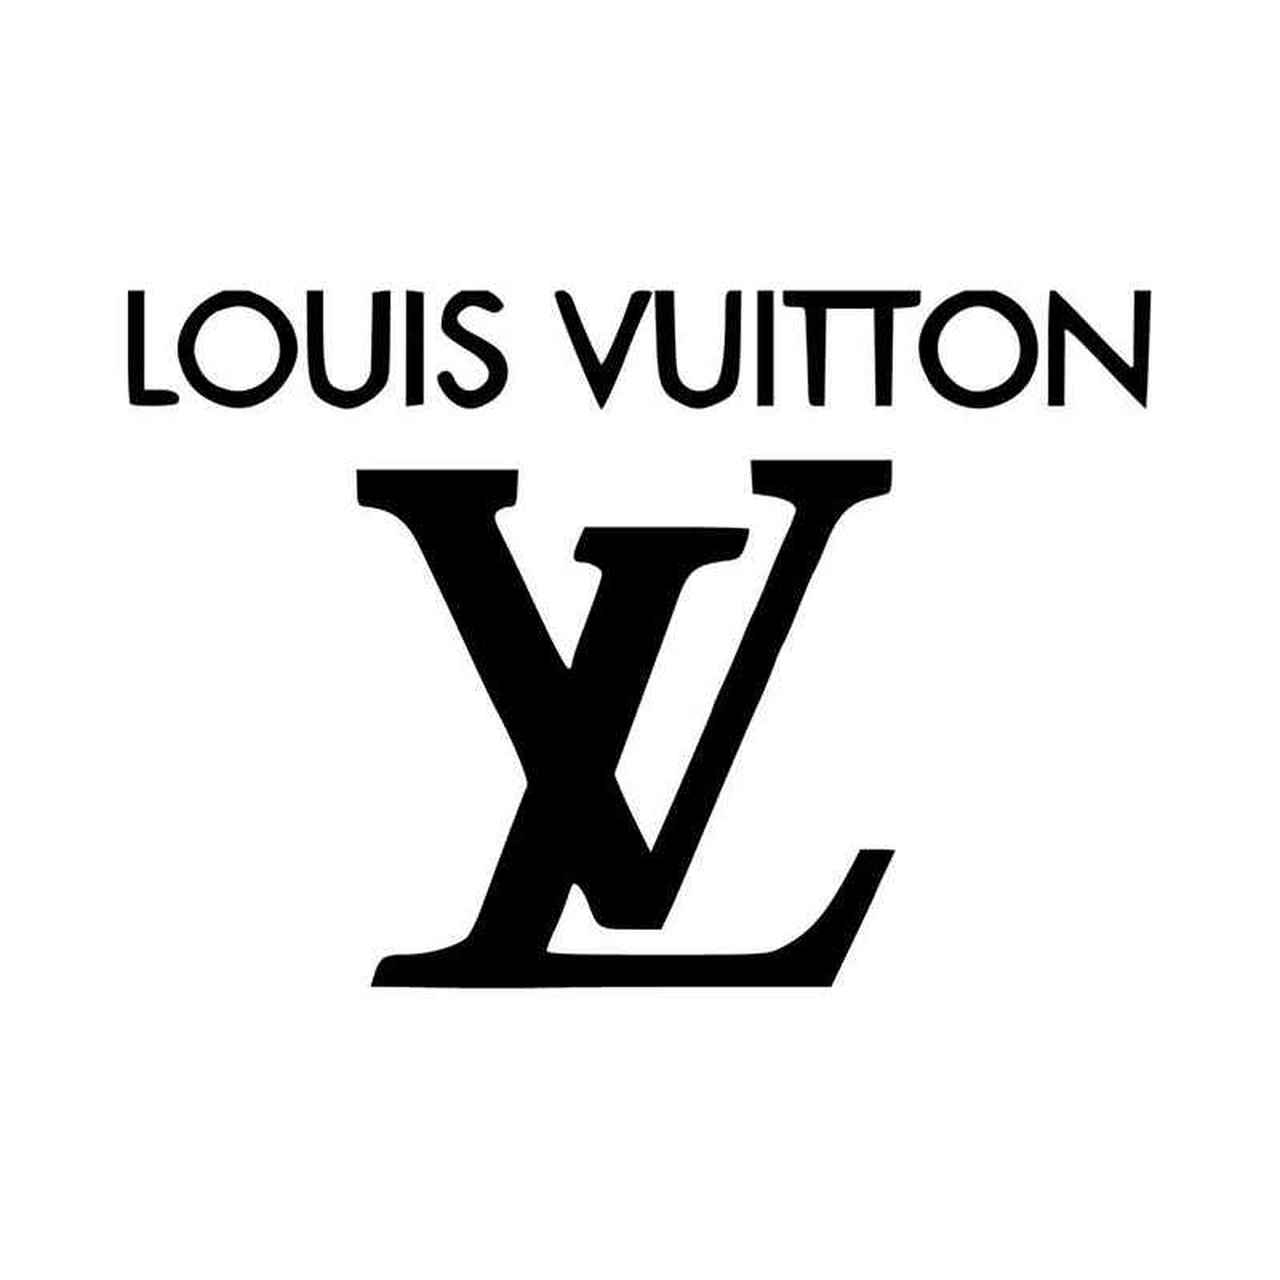 LOUIS&V Logo - Louis Vuitton Logo V Vinyl Decal Sticker